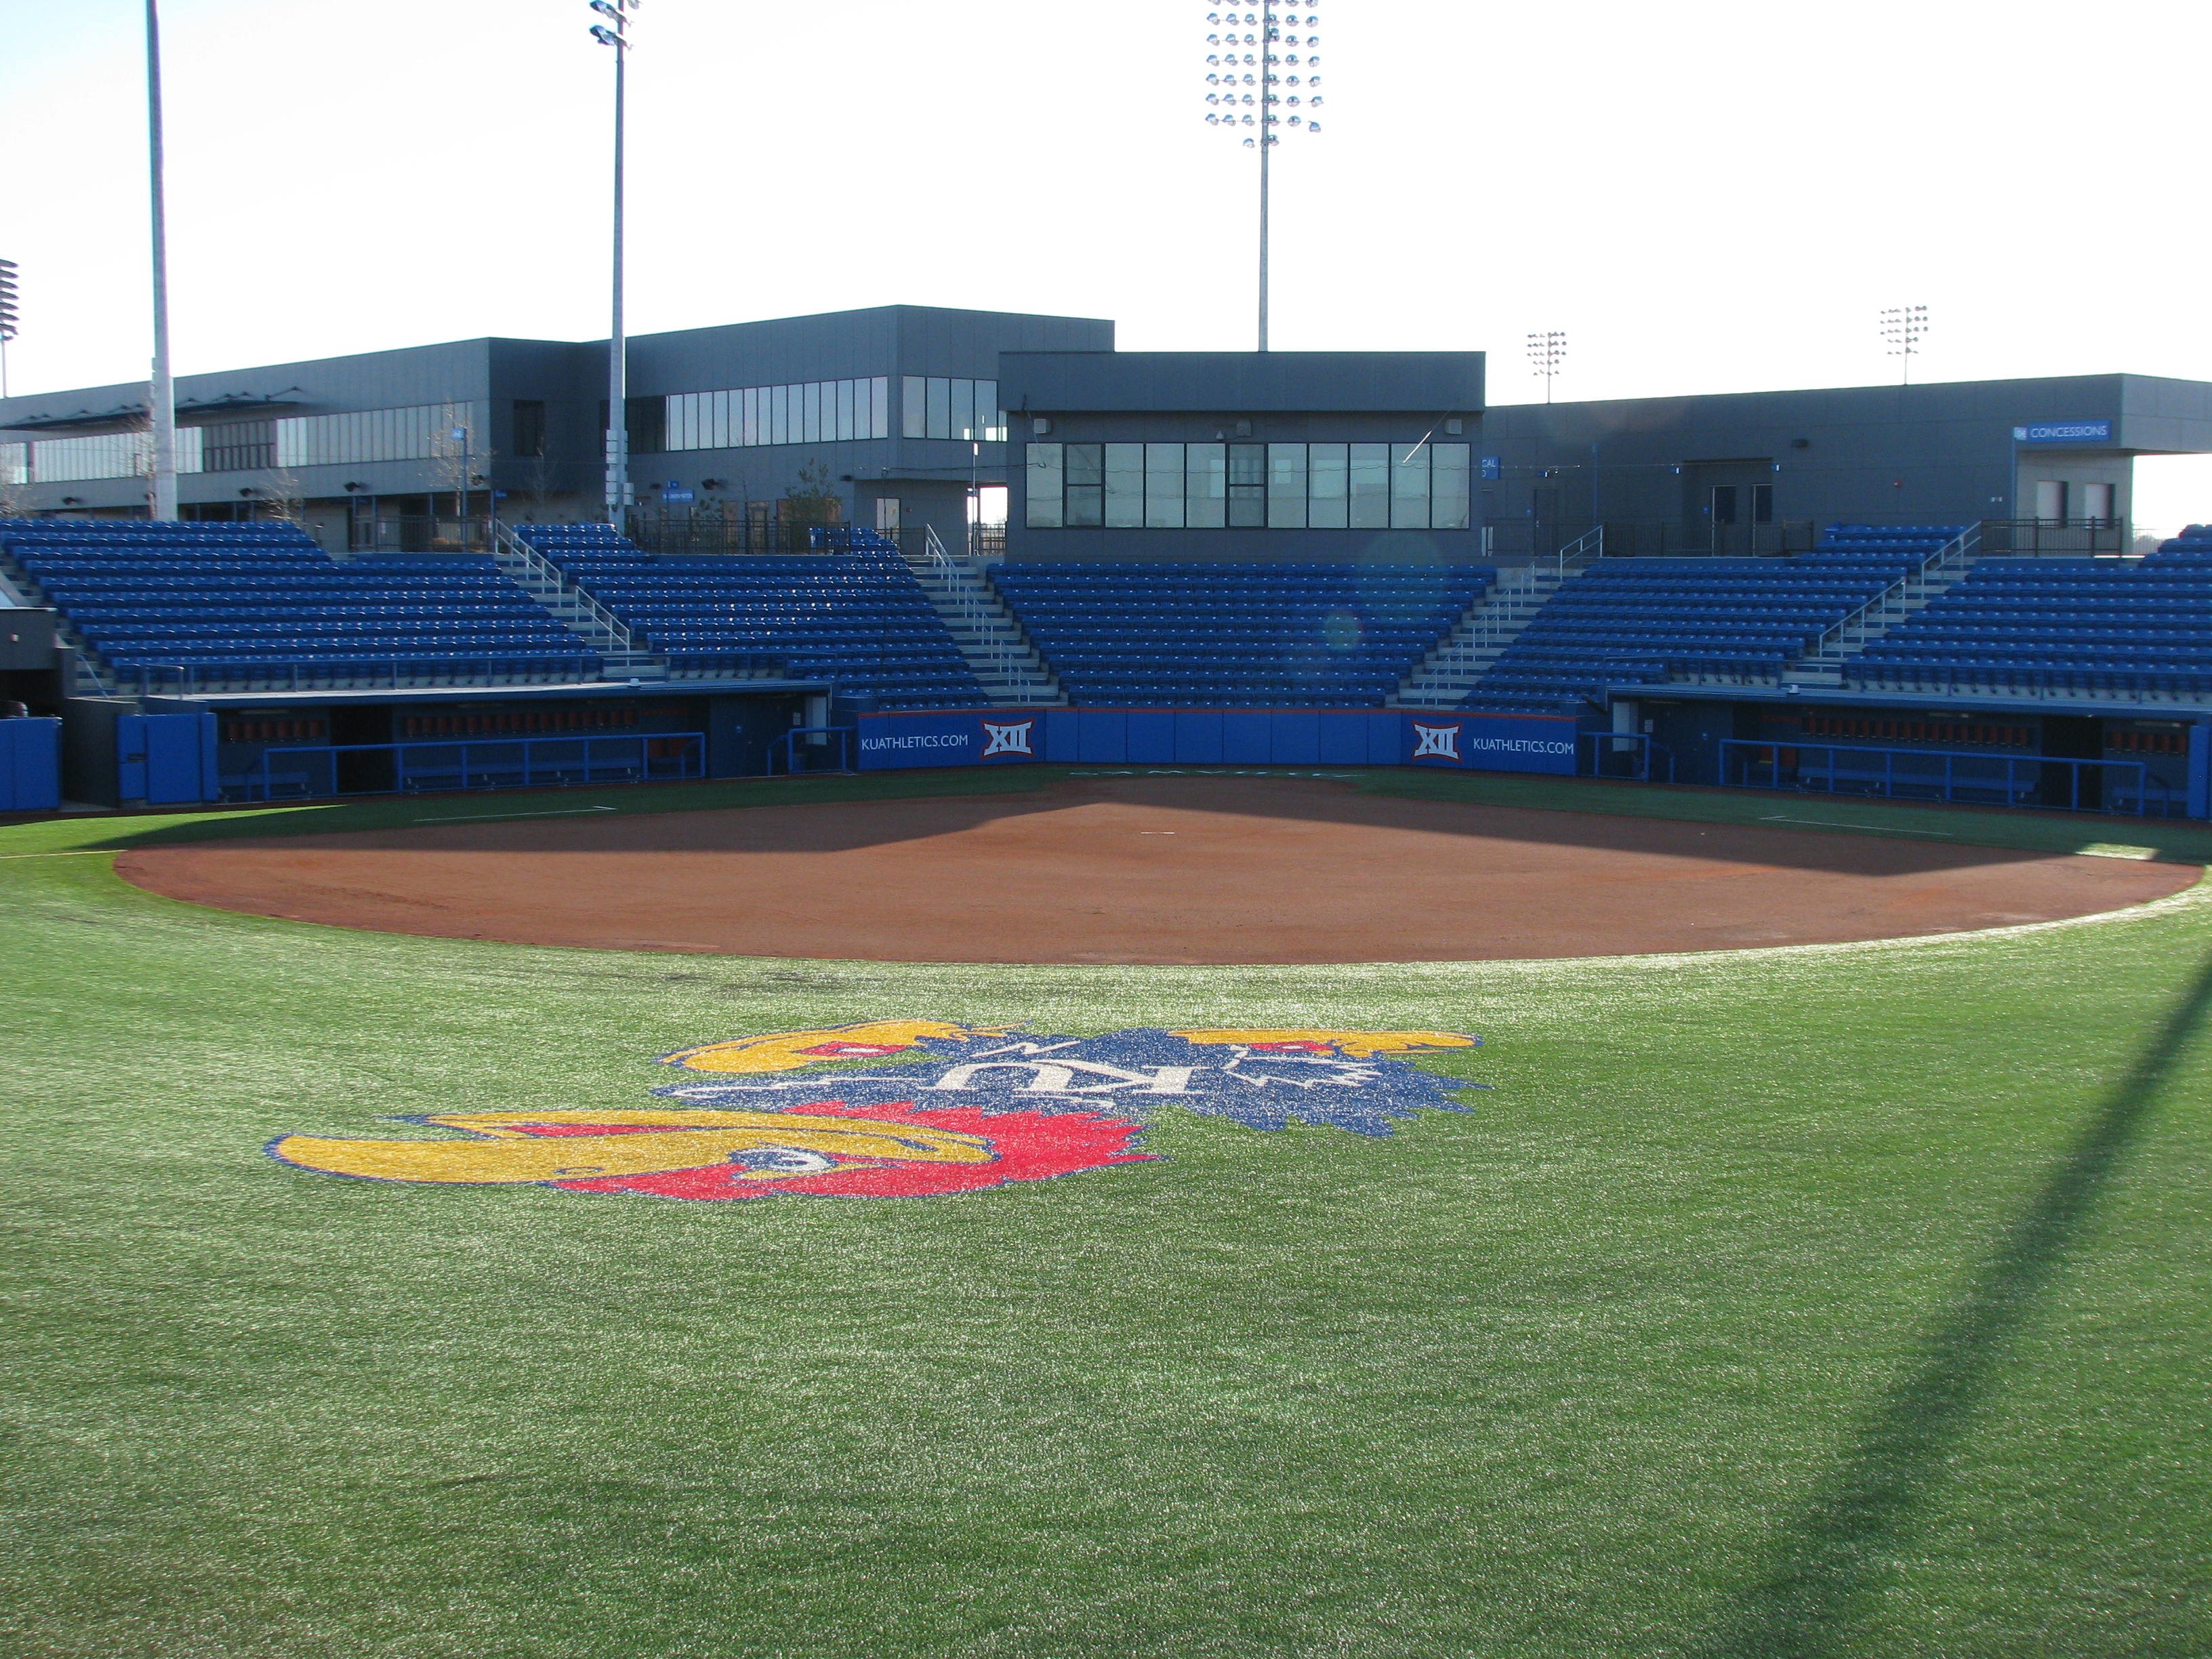 Kansas Jayhawk Softball - Arrocha Park